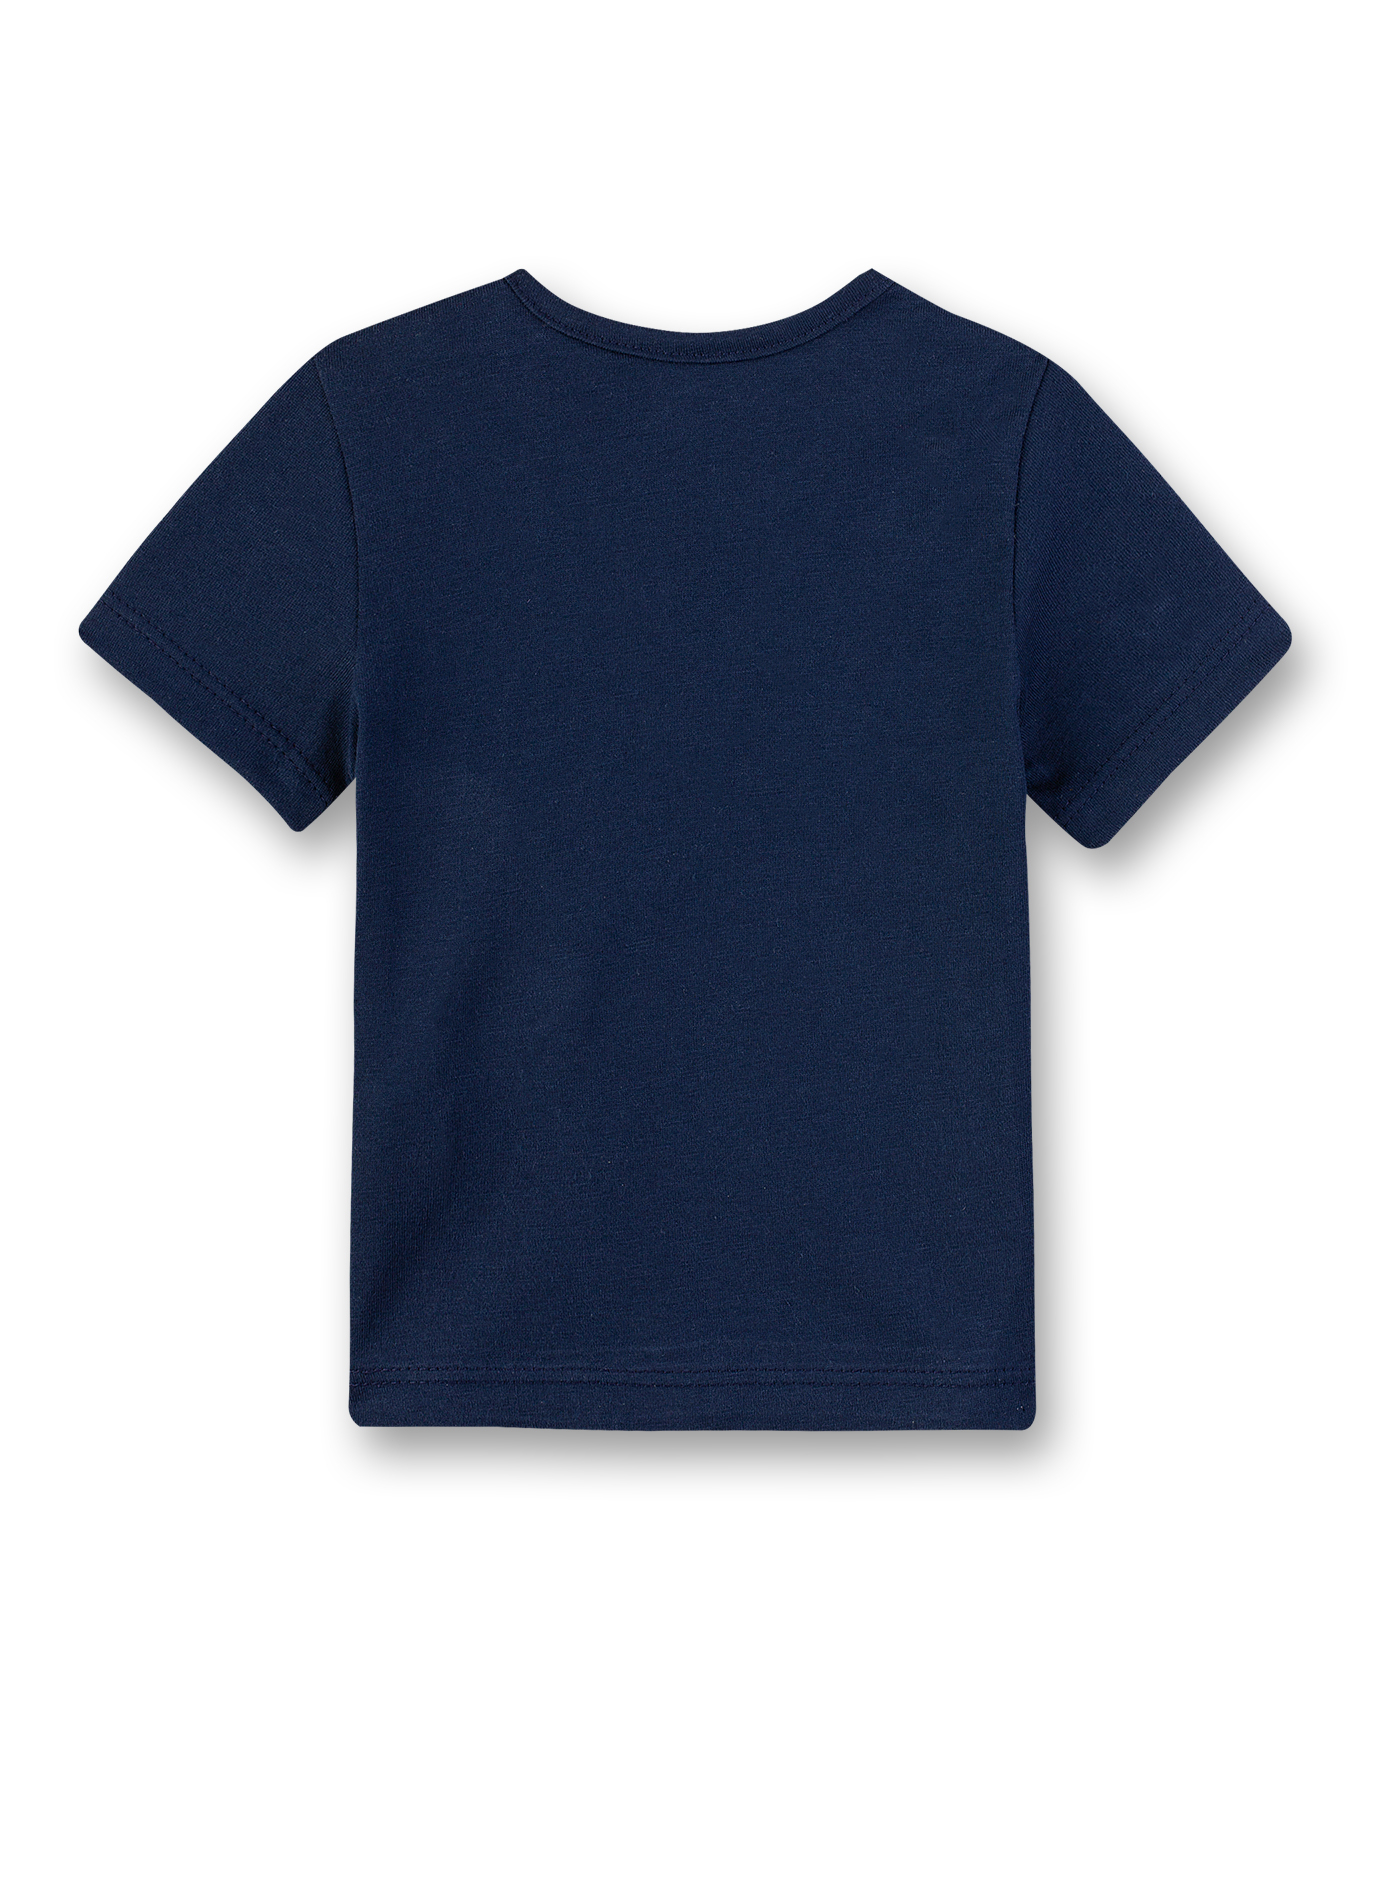 Jungen T-Shirt dunkelblau Small Sailor